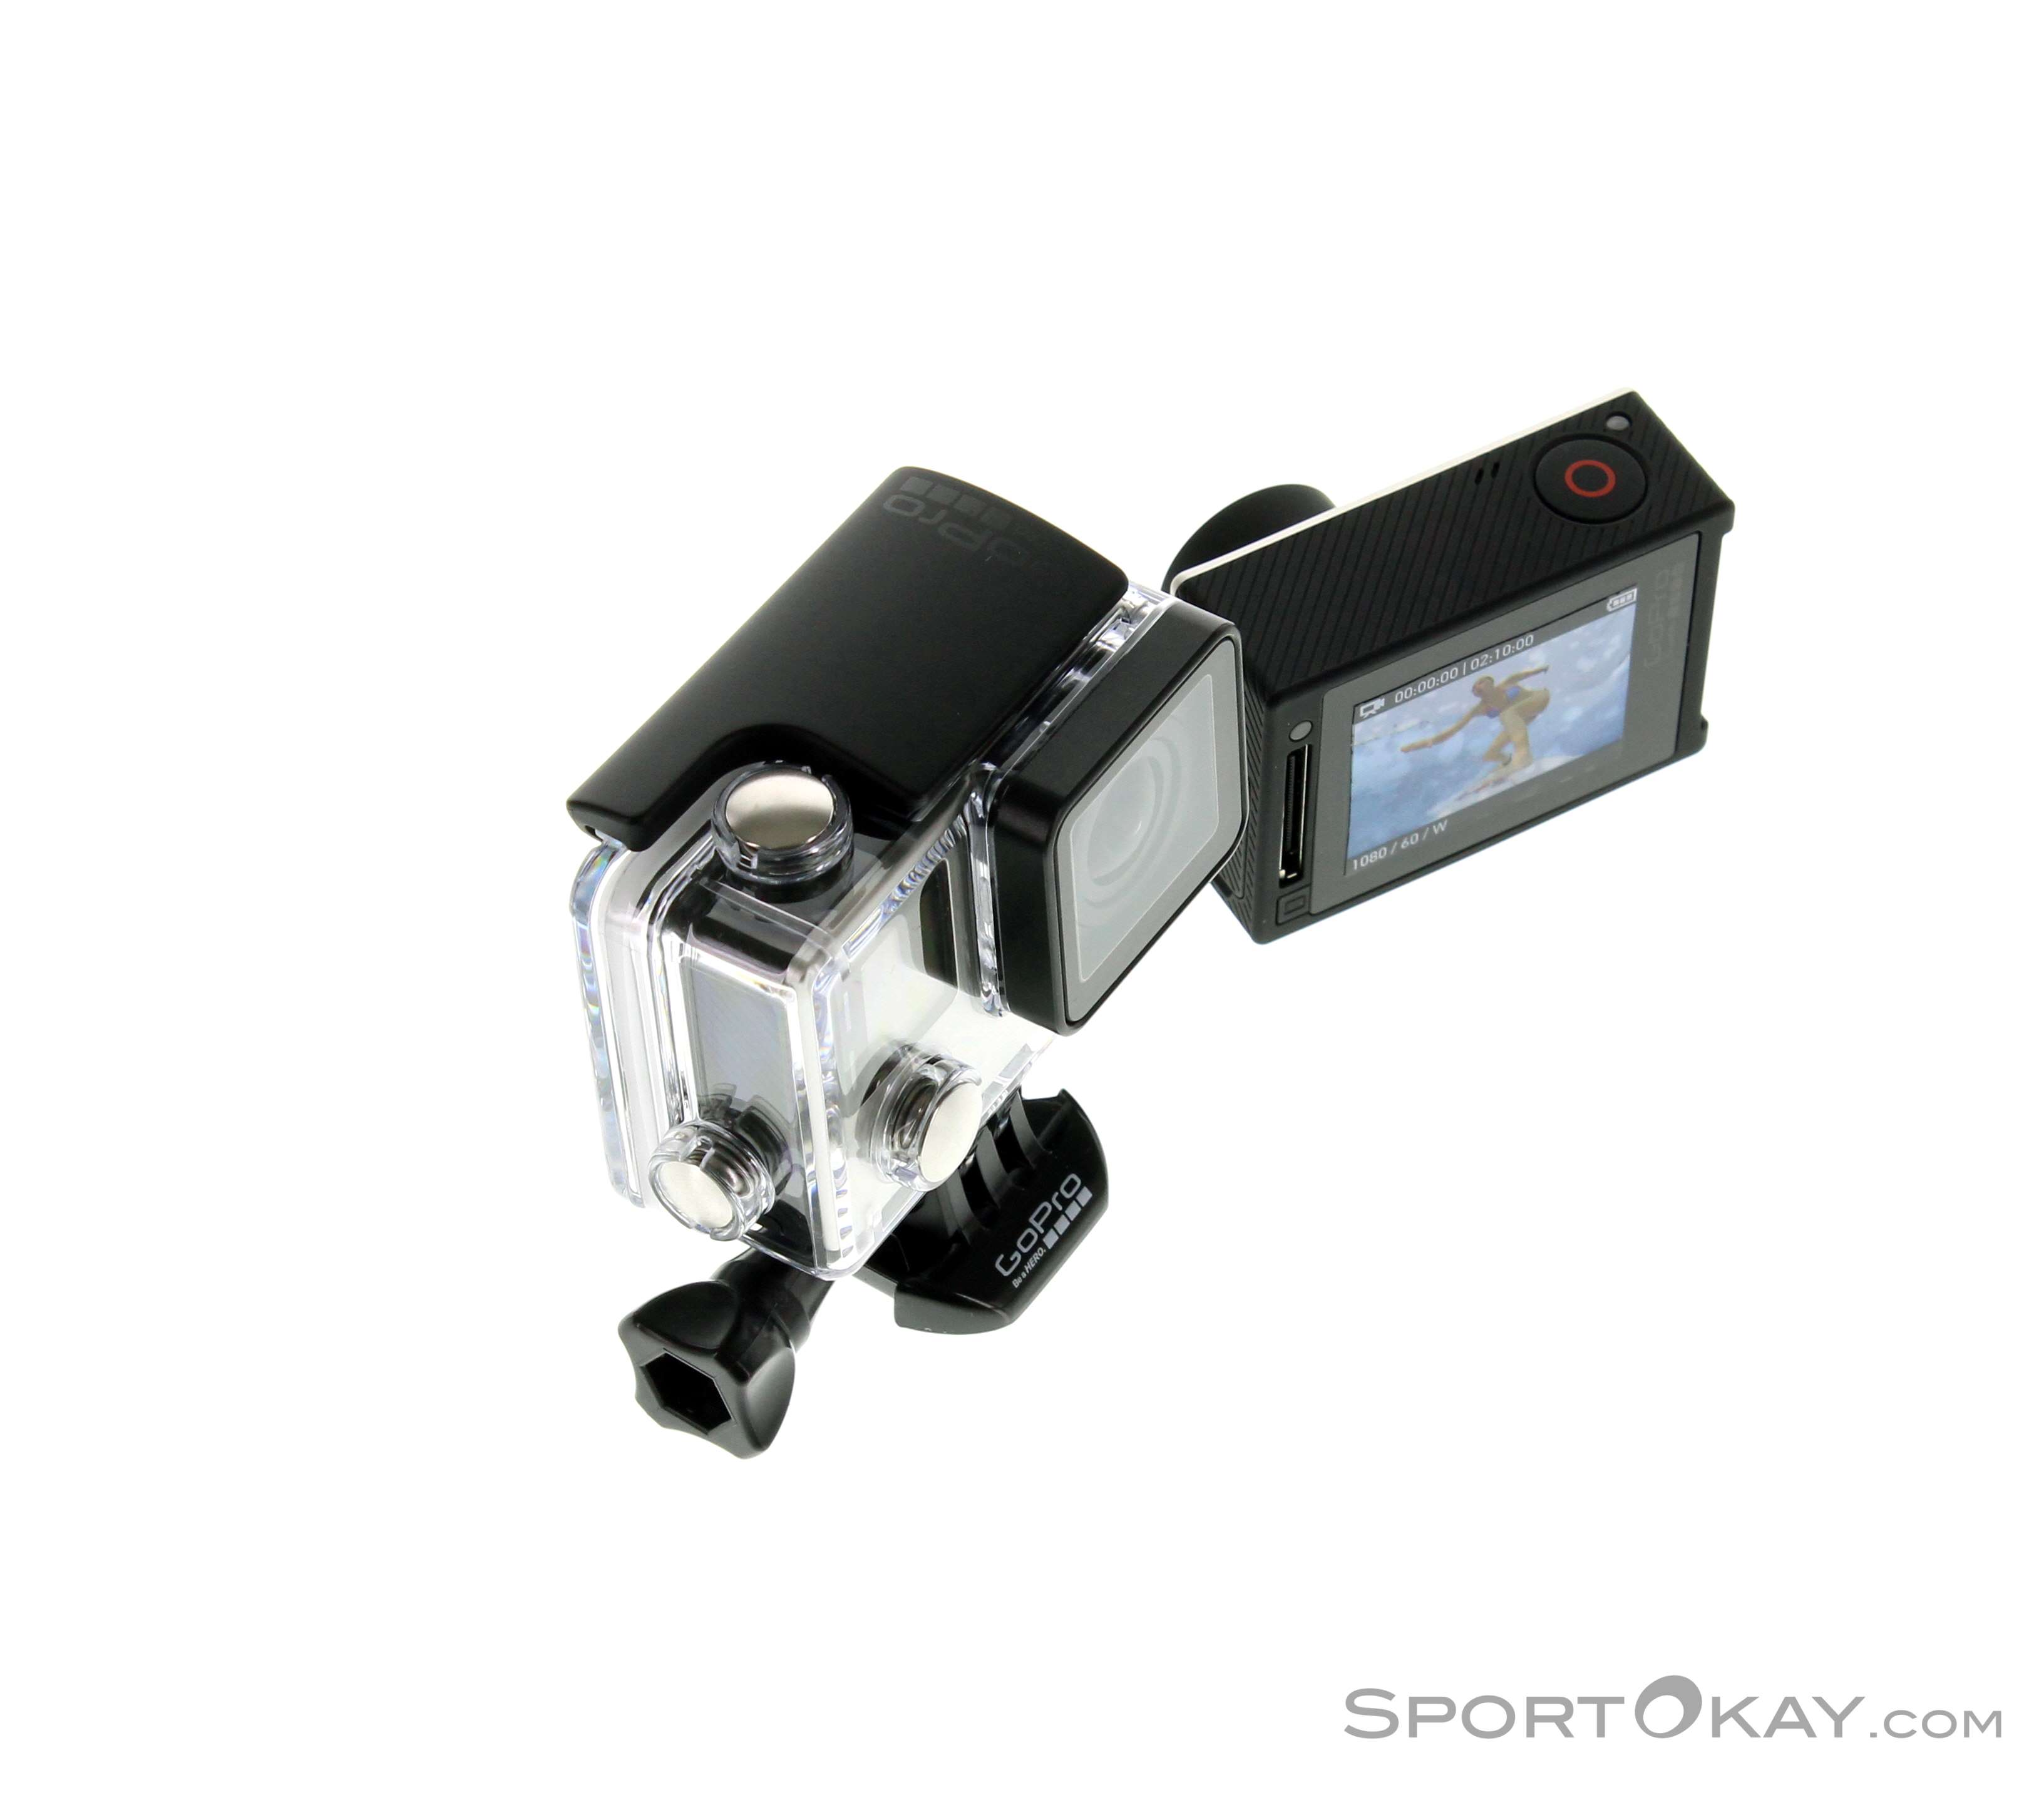 GoPro Hero4 Silver Adventure Edition Actioncam   Action Cameras